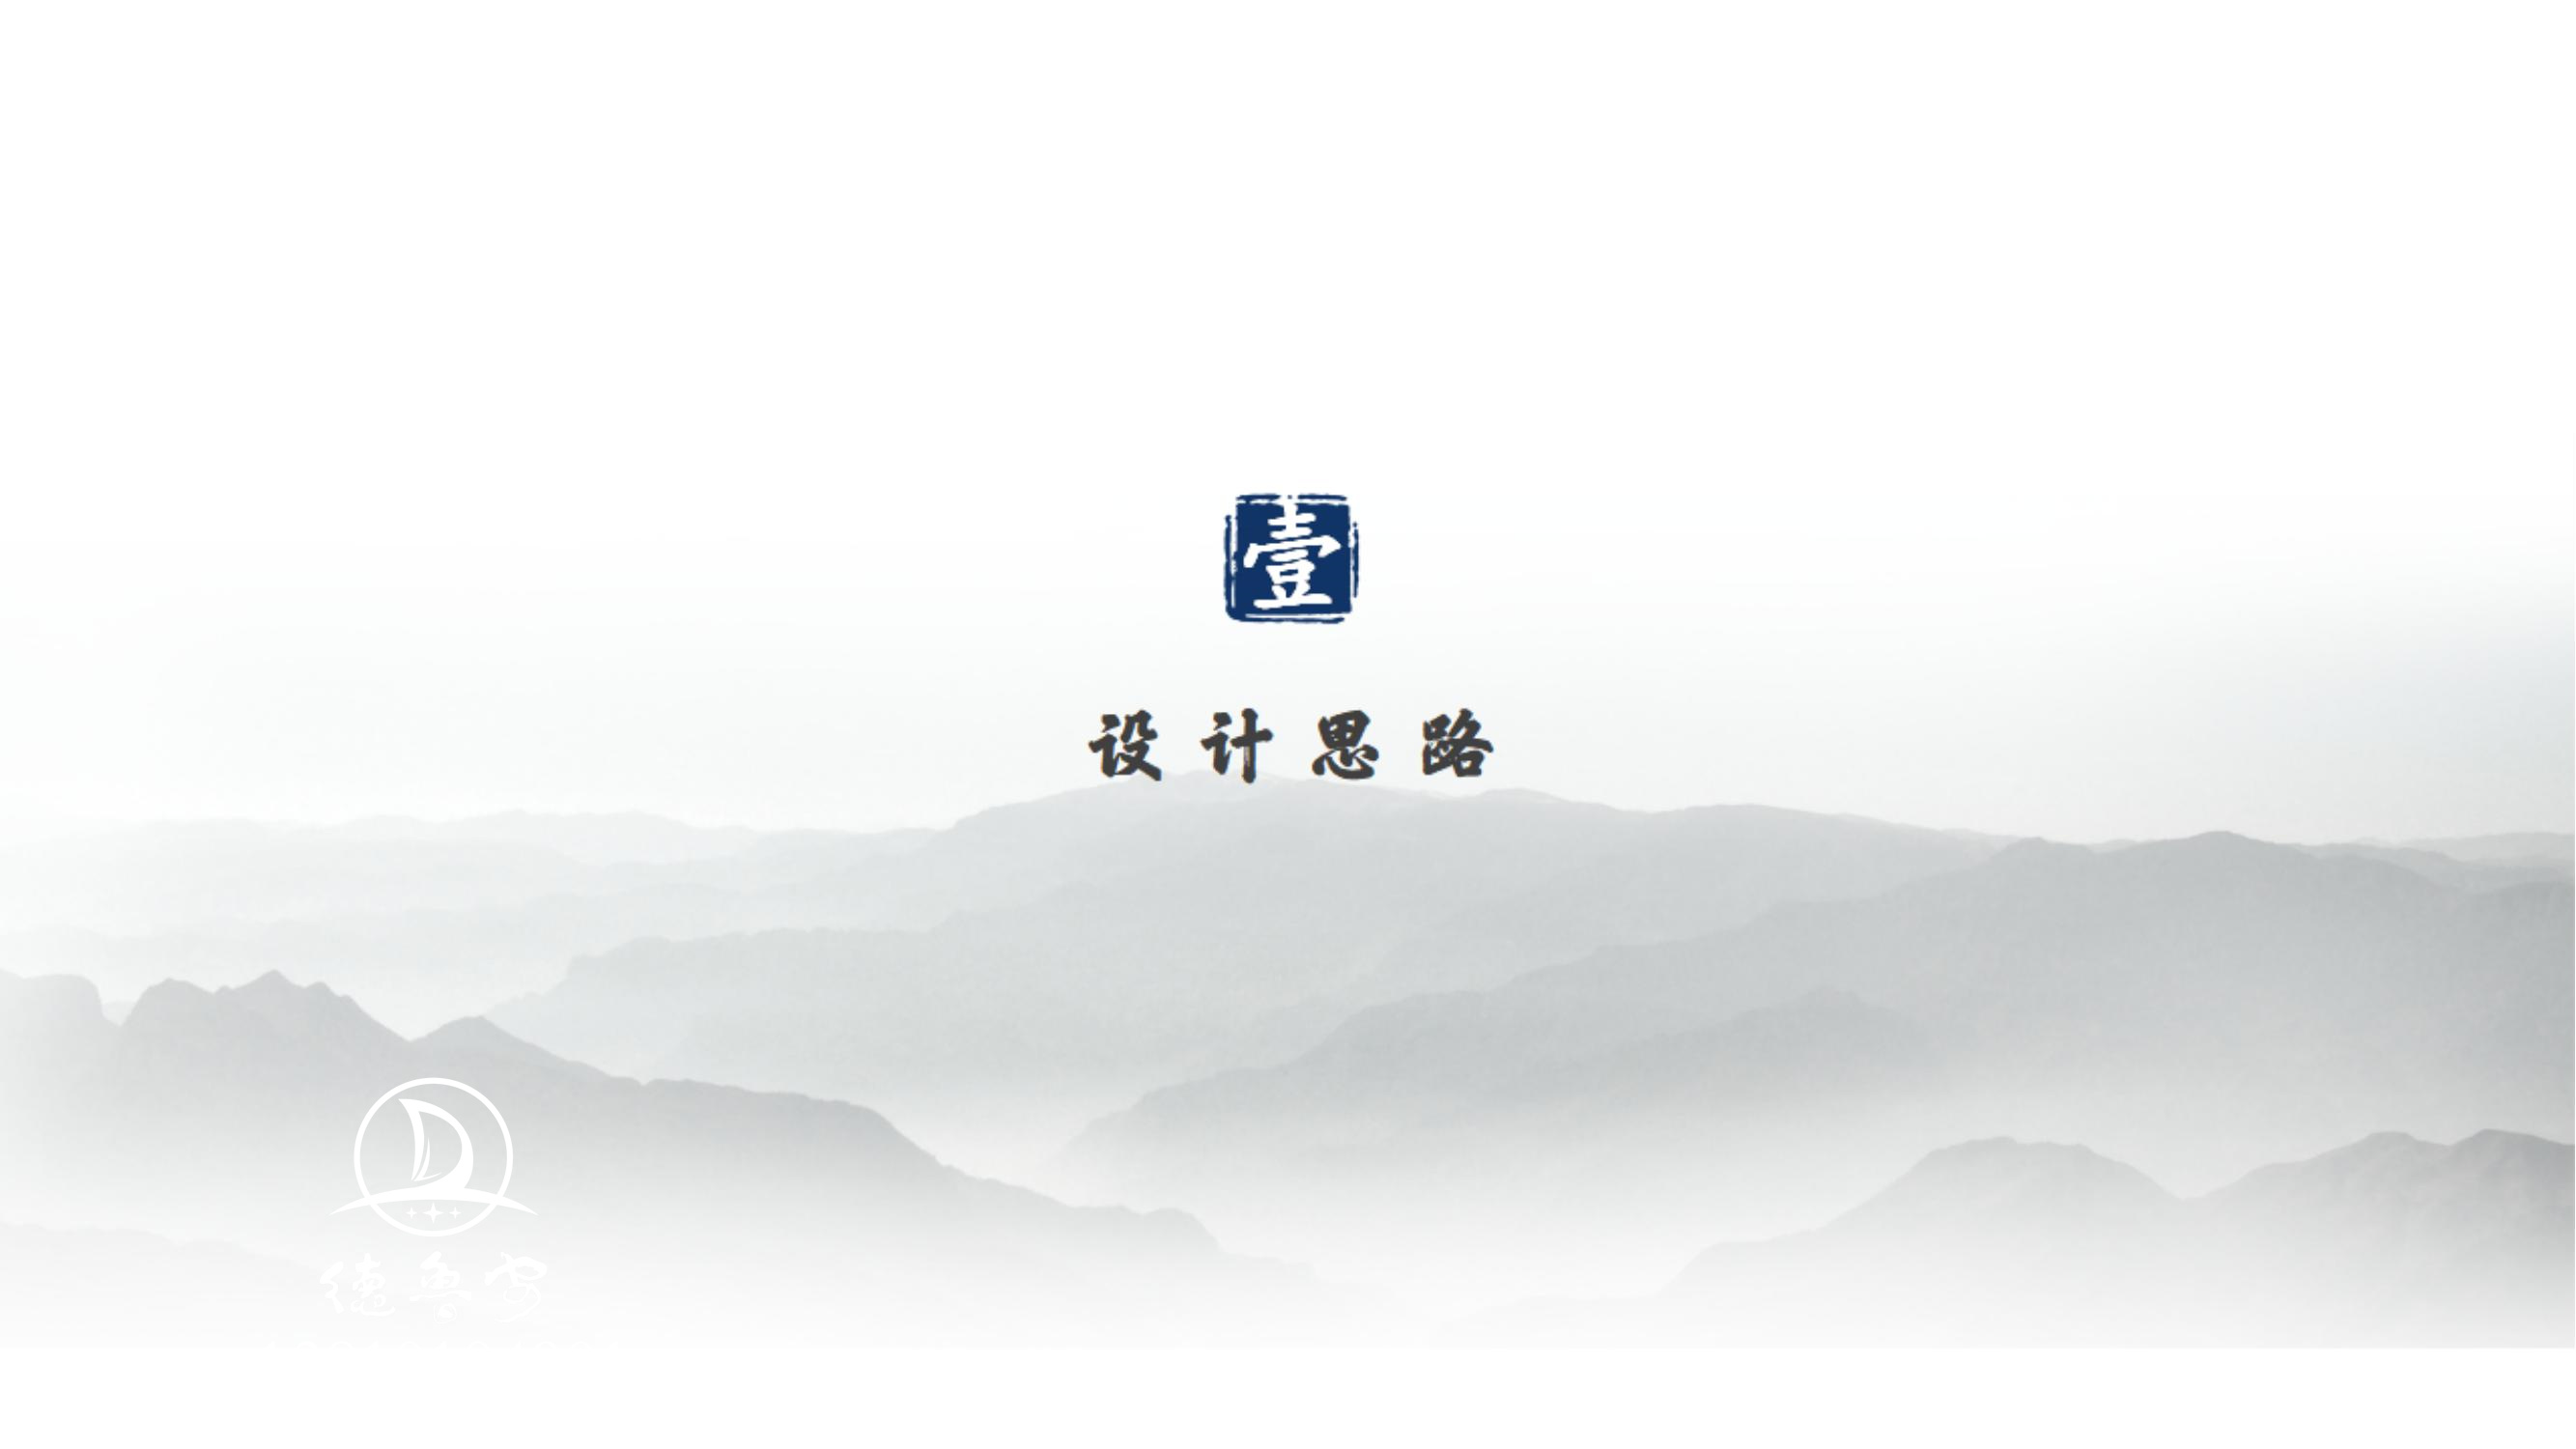 玉皇宫 logo定稿方案_01.jpg